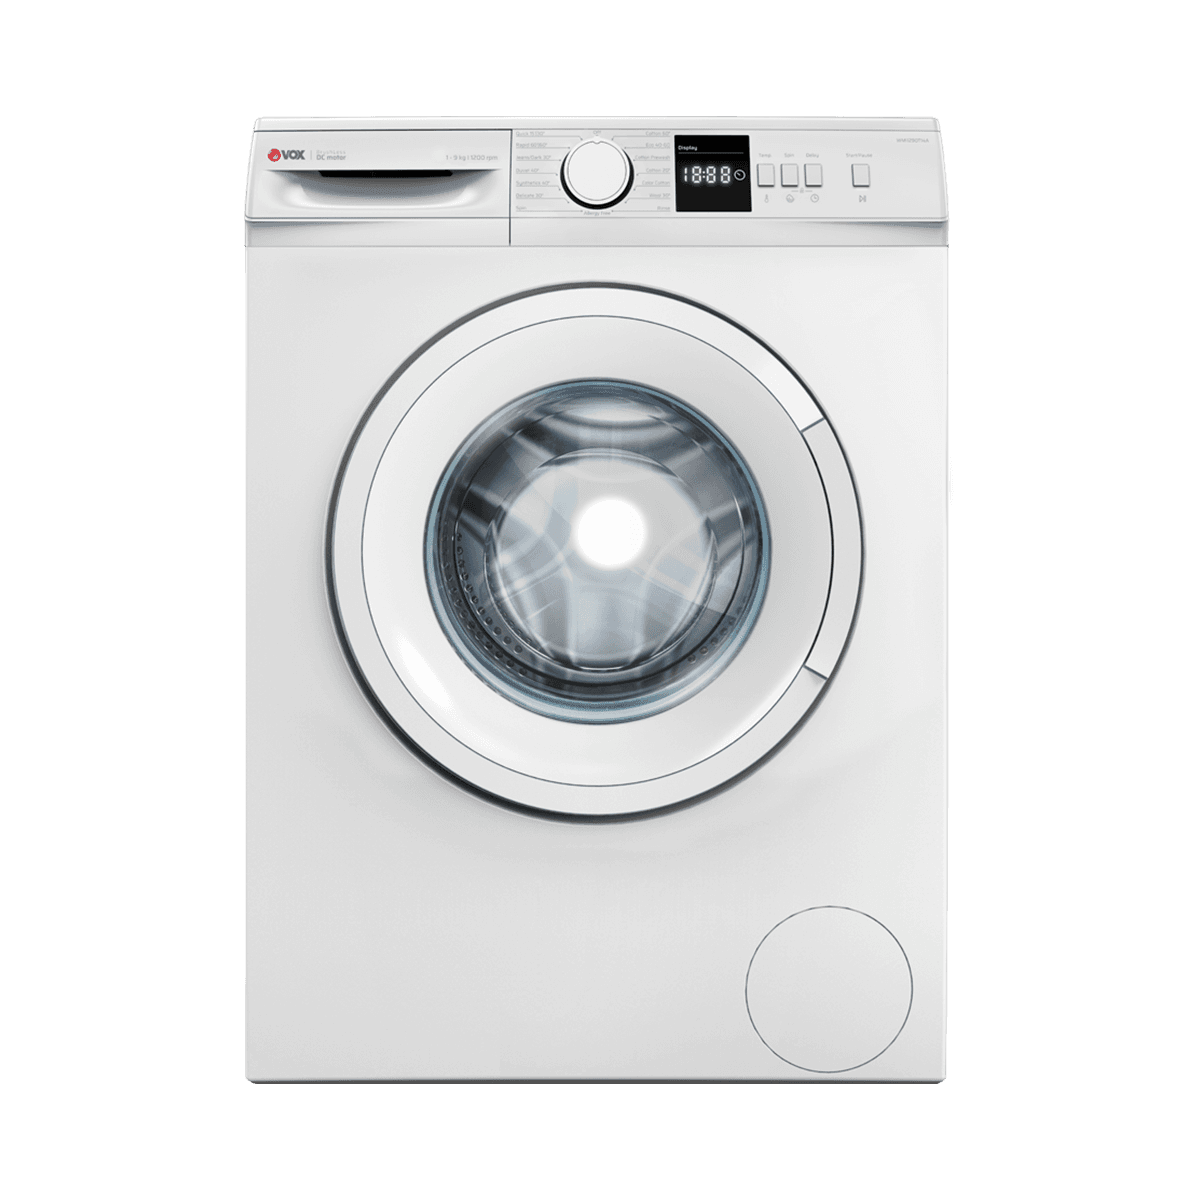 Selected image for VOX WMI1290T14A Mašina za pranje veša, 9kg, 1200 obrtaja/min, 15 programa, Bela